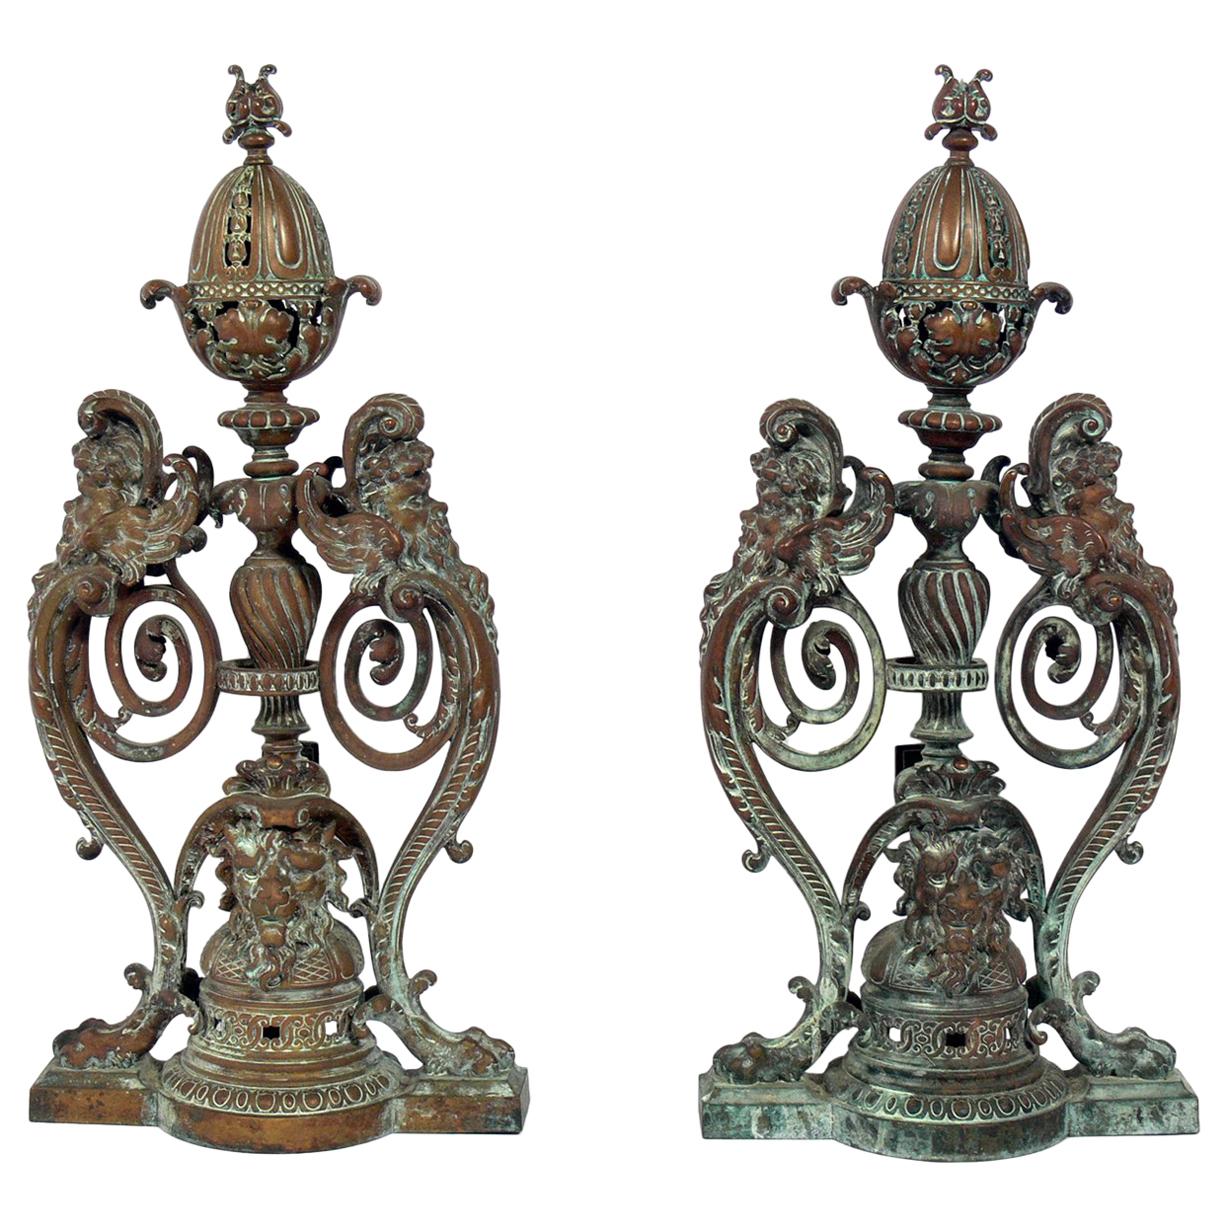 Ornate 19th Century Bronze Andirons